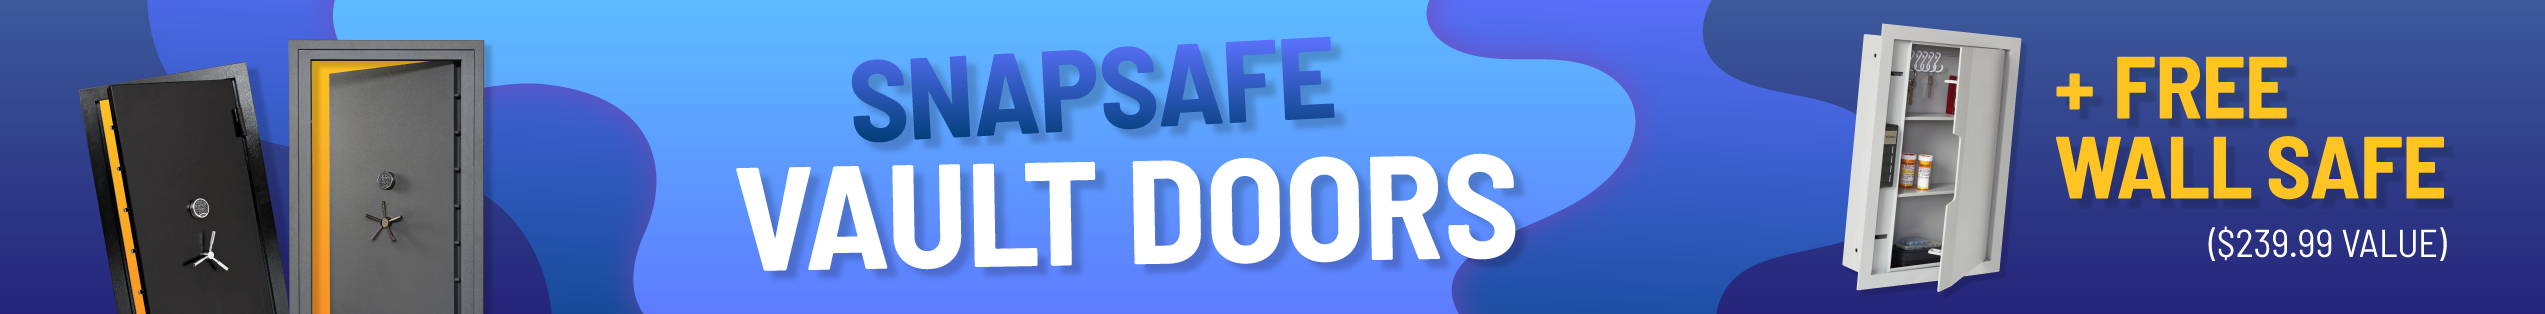 SnapSafe Vault Doors=Get a FREE Wall Safe